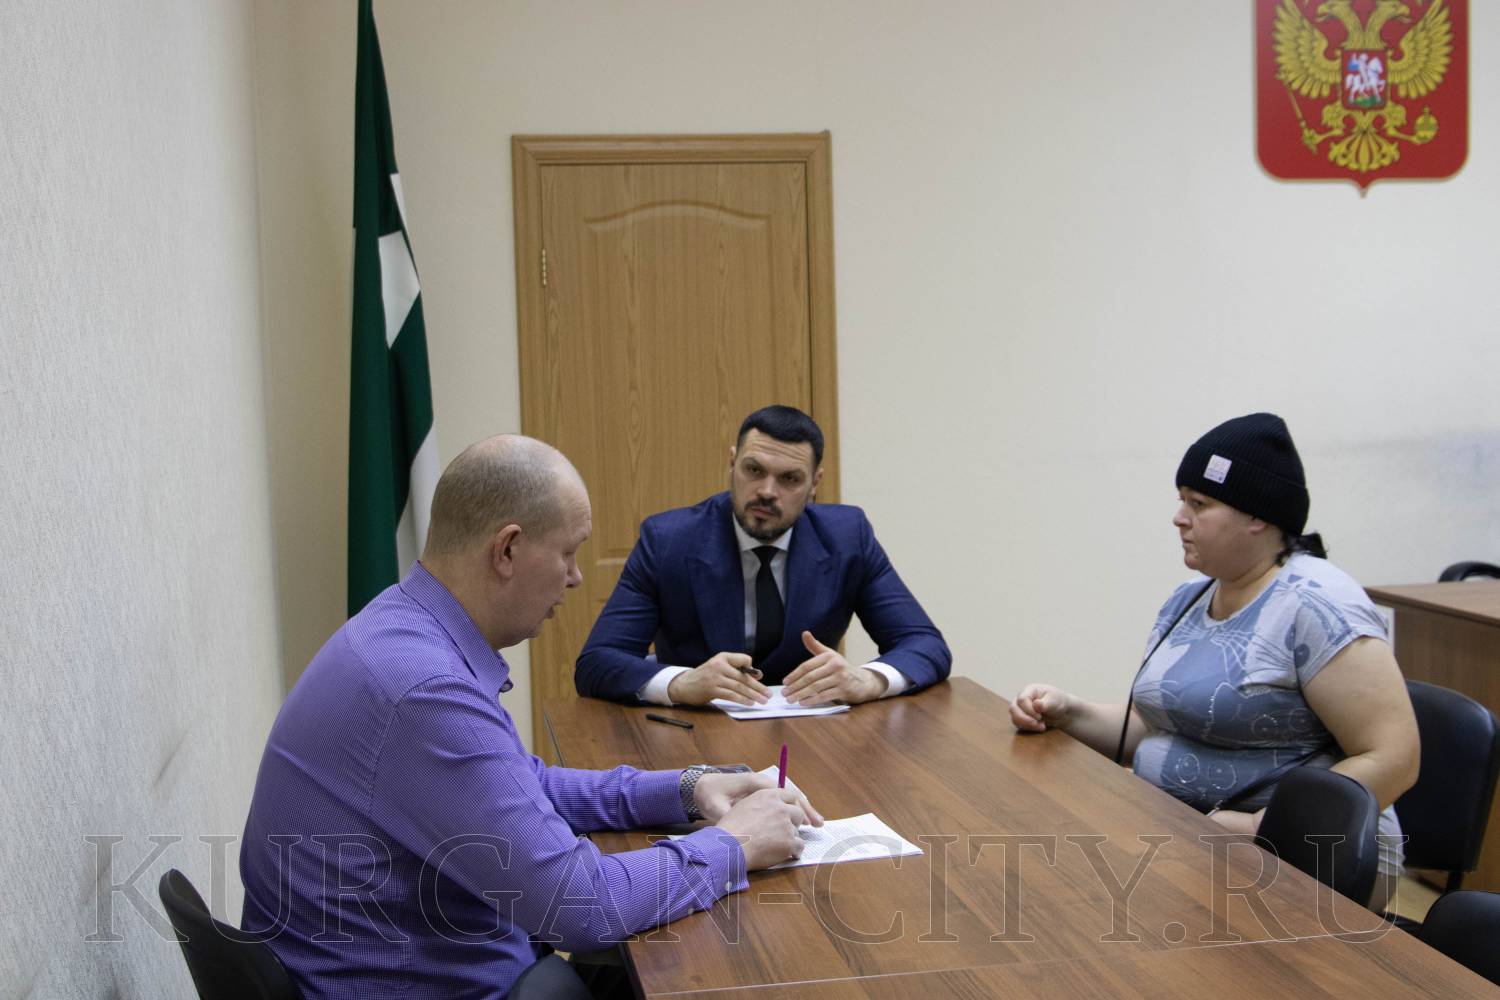 Заместитель Главы города Кургана, директор департамента жилищно-коммунального хозяйства Роман Медведев провел личный приём граждан.